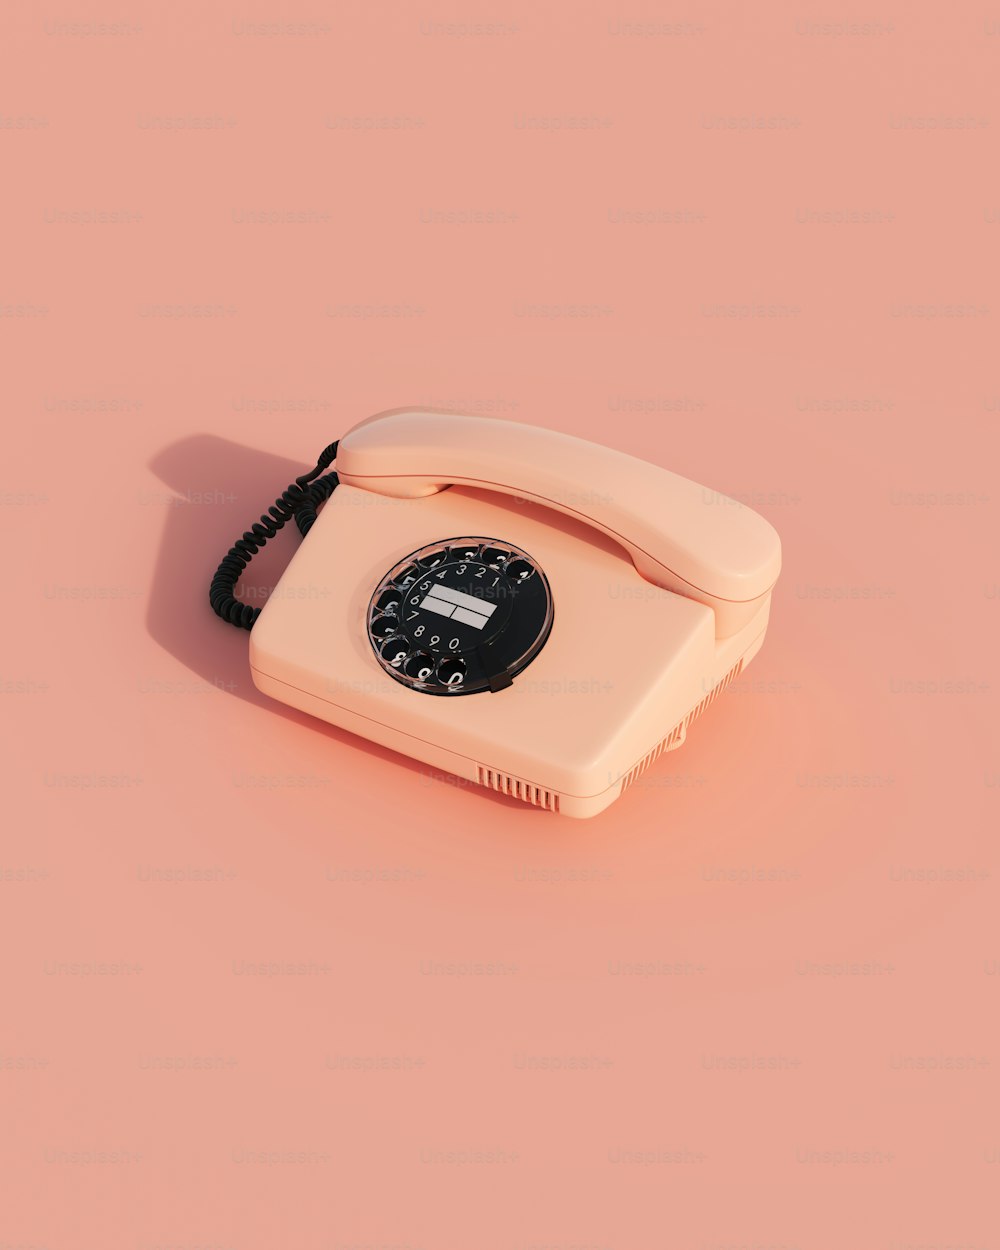 Un telefono vecchio stile su uno sfondo rosa